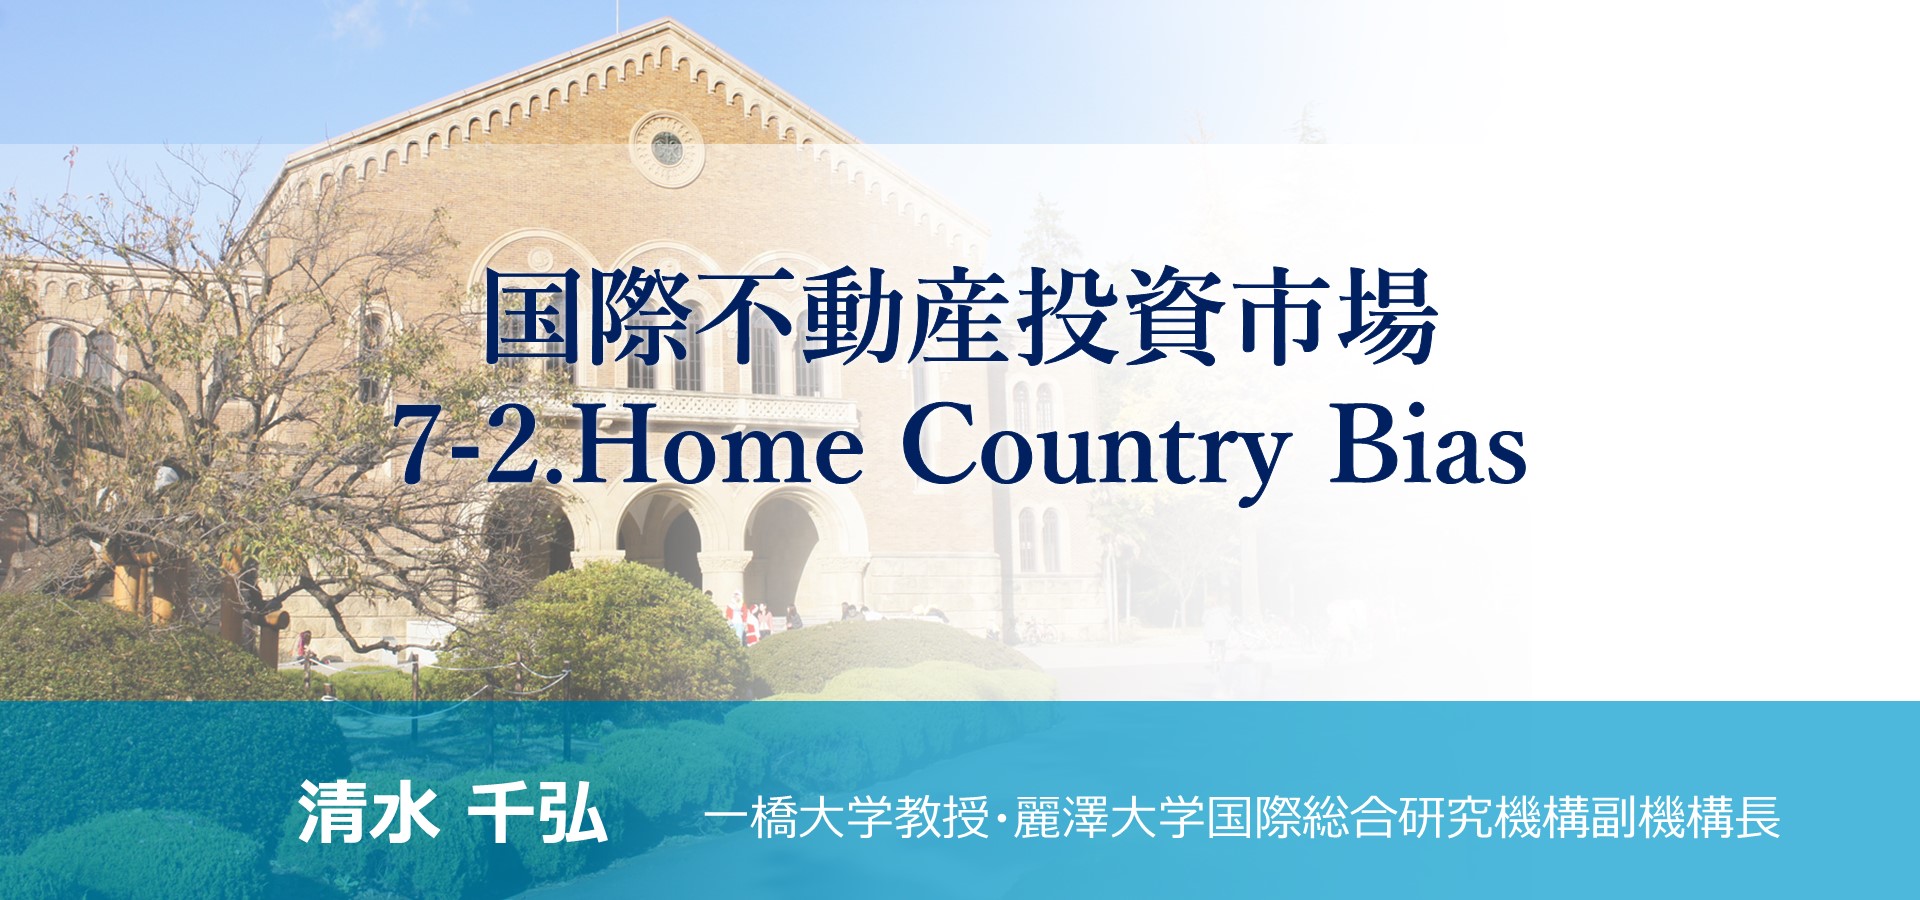 「国際不動産投資市場<br>7-2. Home Country Bias」のアイキャッチ画像